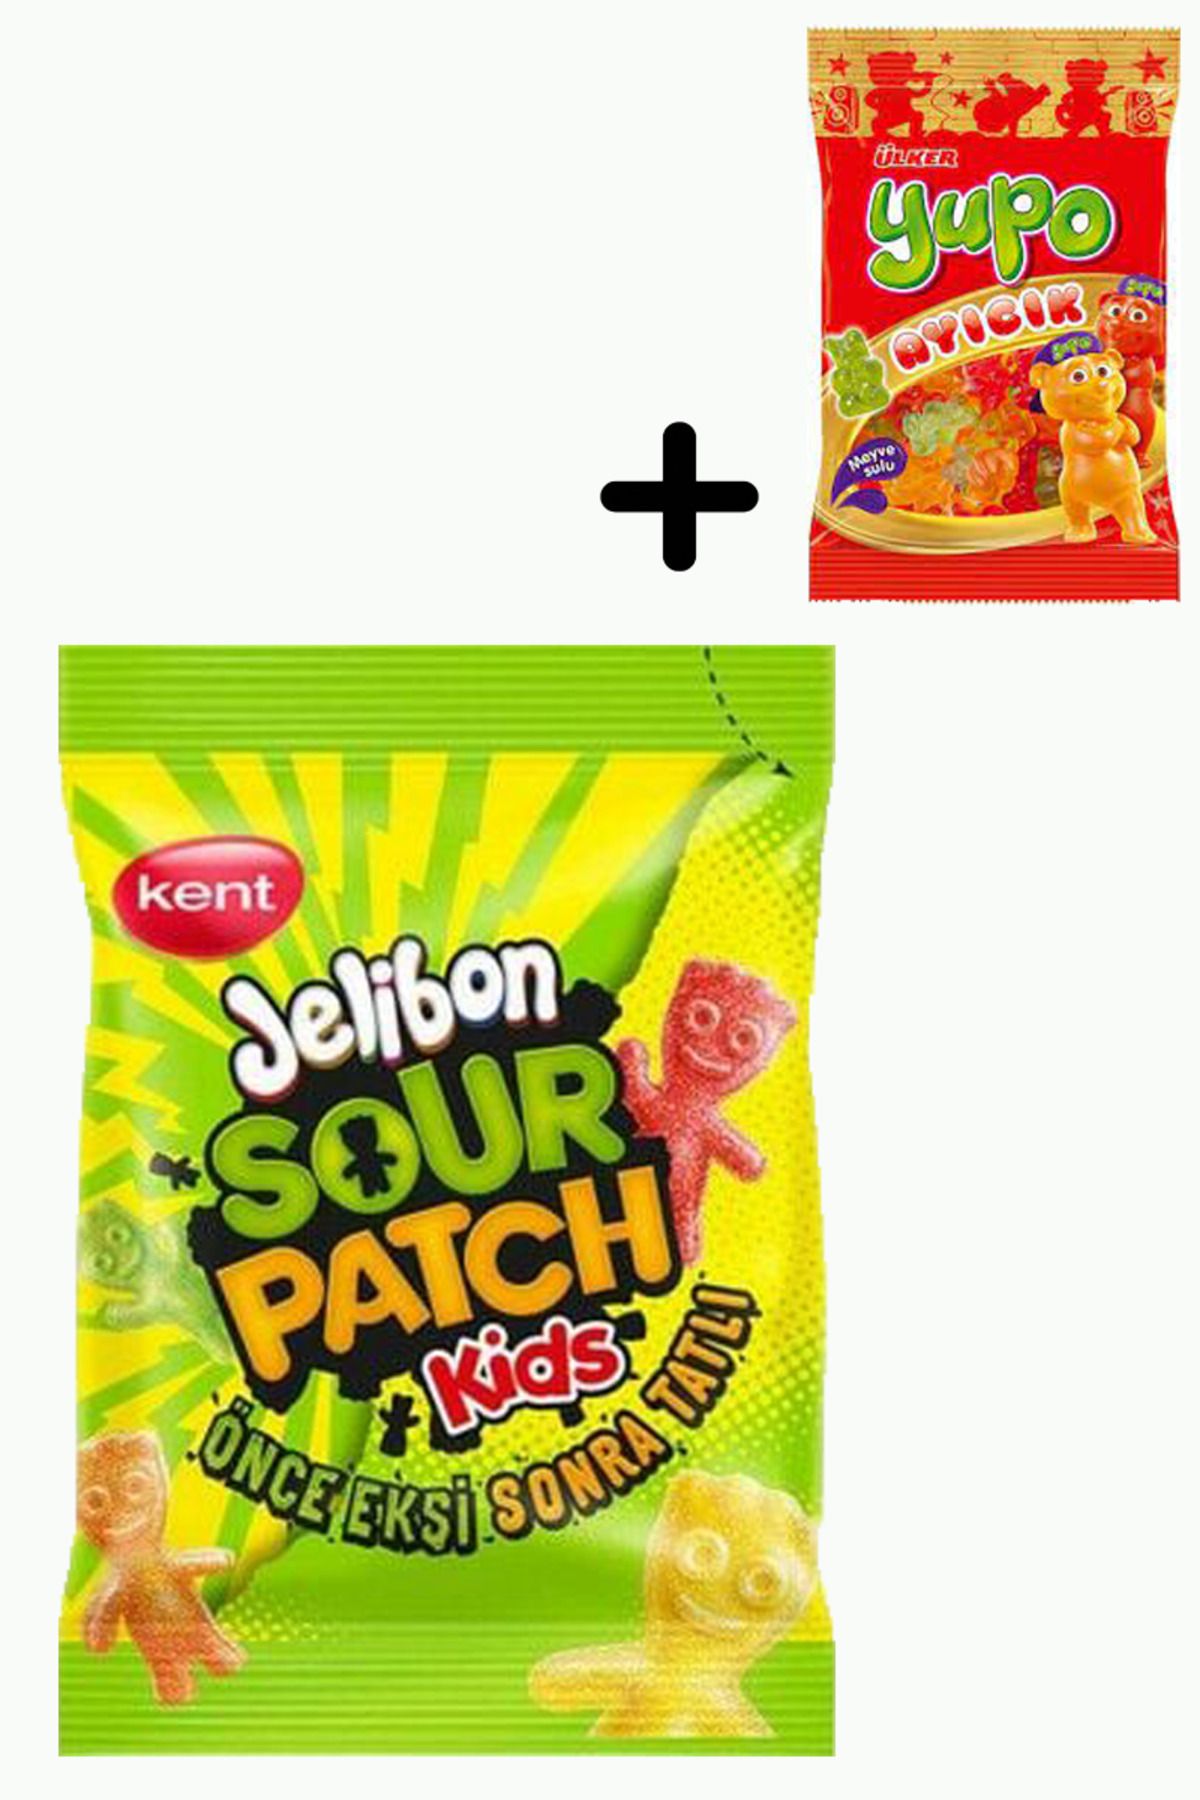 Ülker Jelibon Sour Patch Kids Şekerleme 80 gr 24 Adet + Ülker Yupo Ayıcık 1 Adet 80 gr